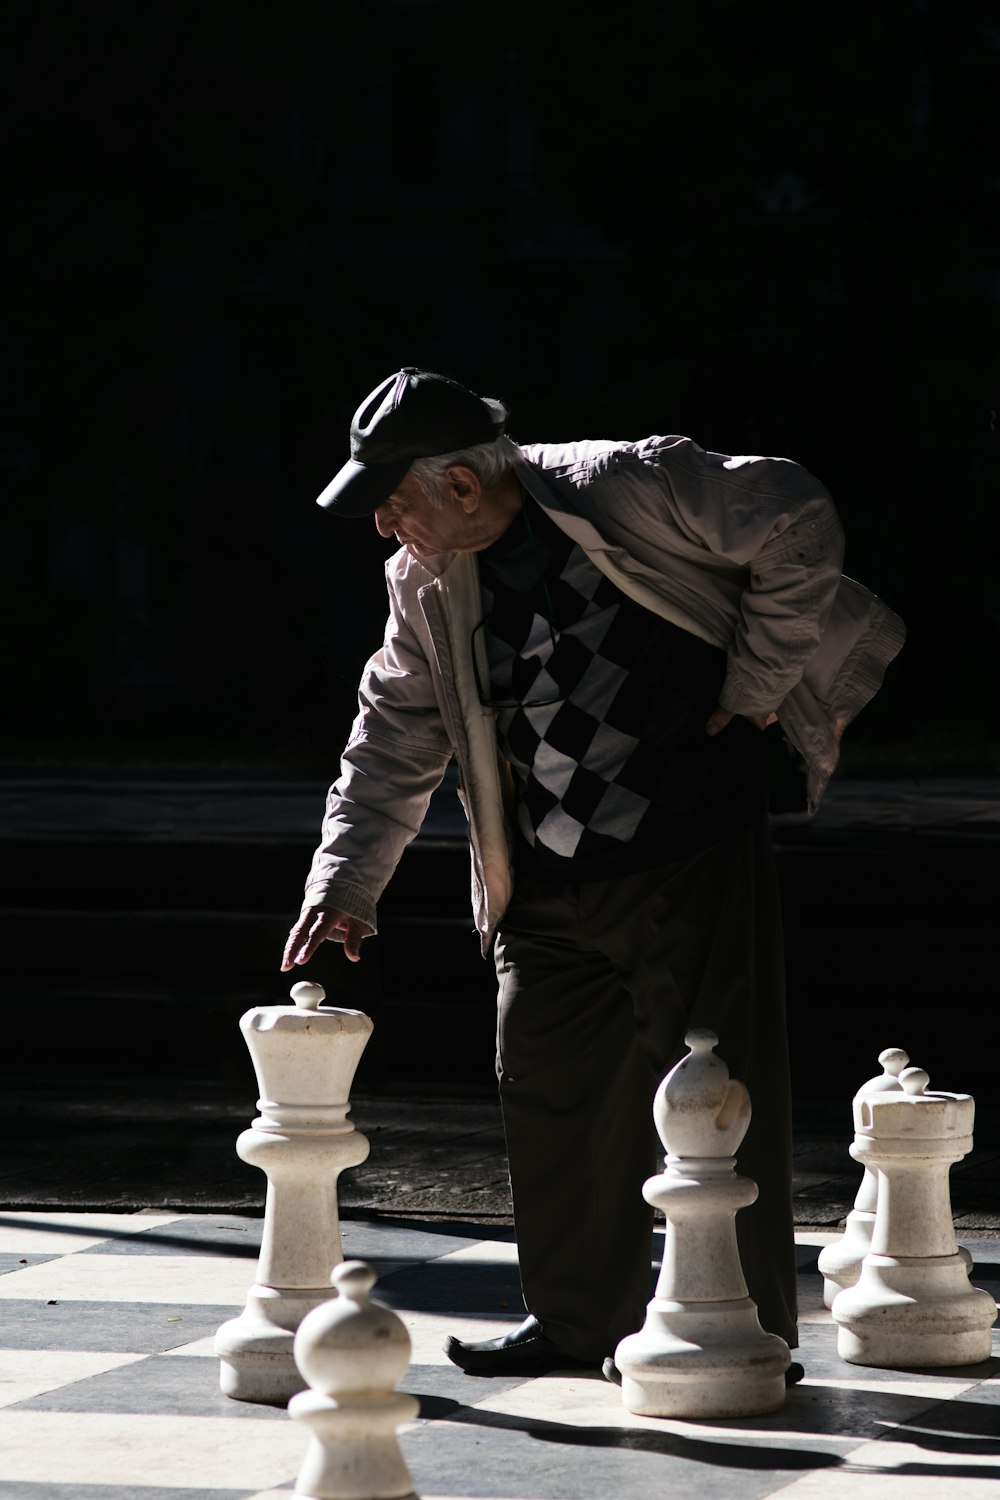 Hombre en chaqueta blanca y negra y pantalones negros de pie junto a una pieza de ajedrez blanca